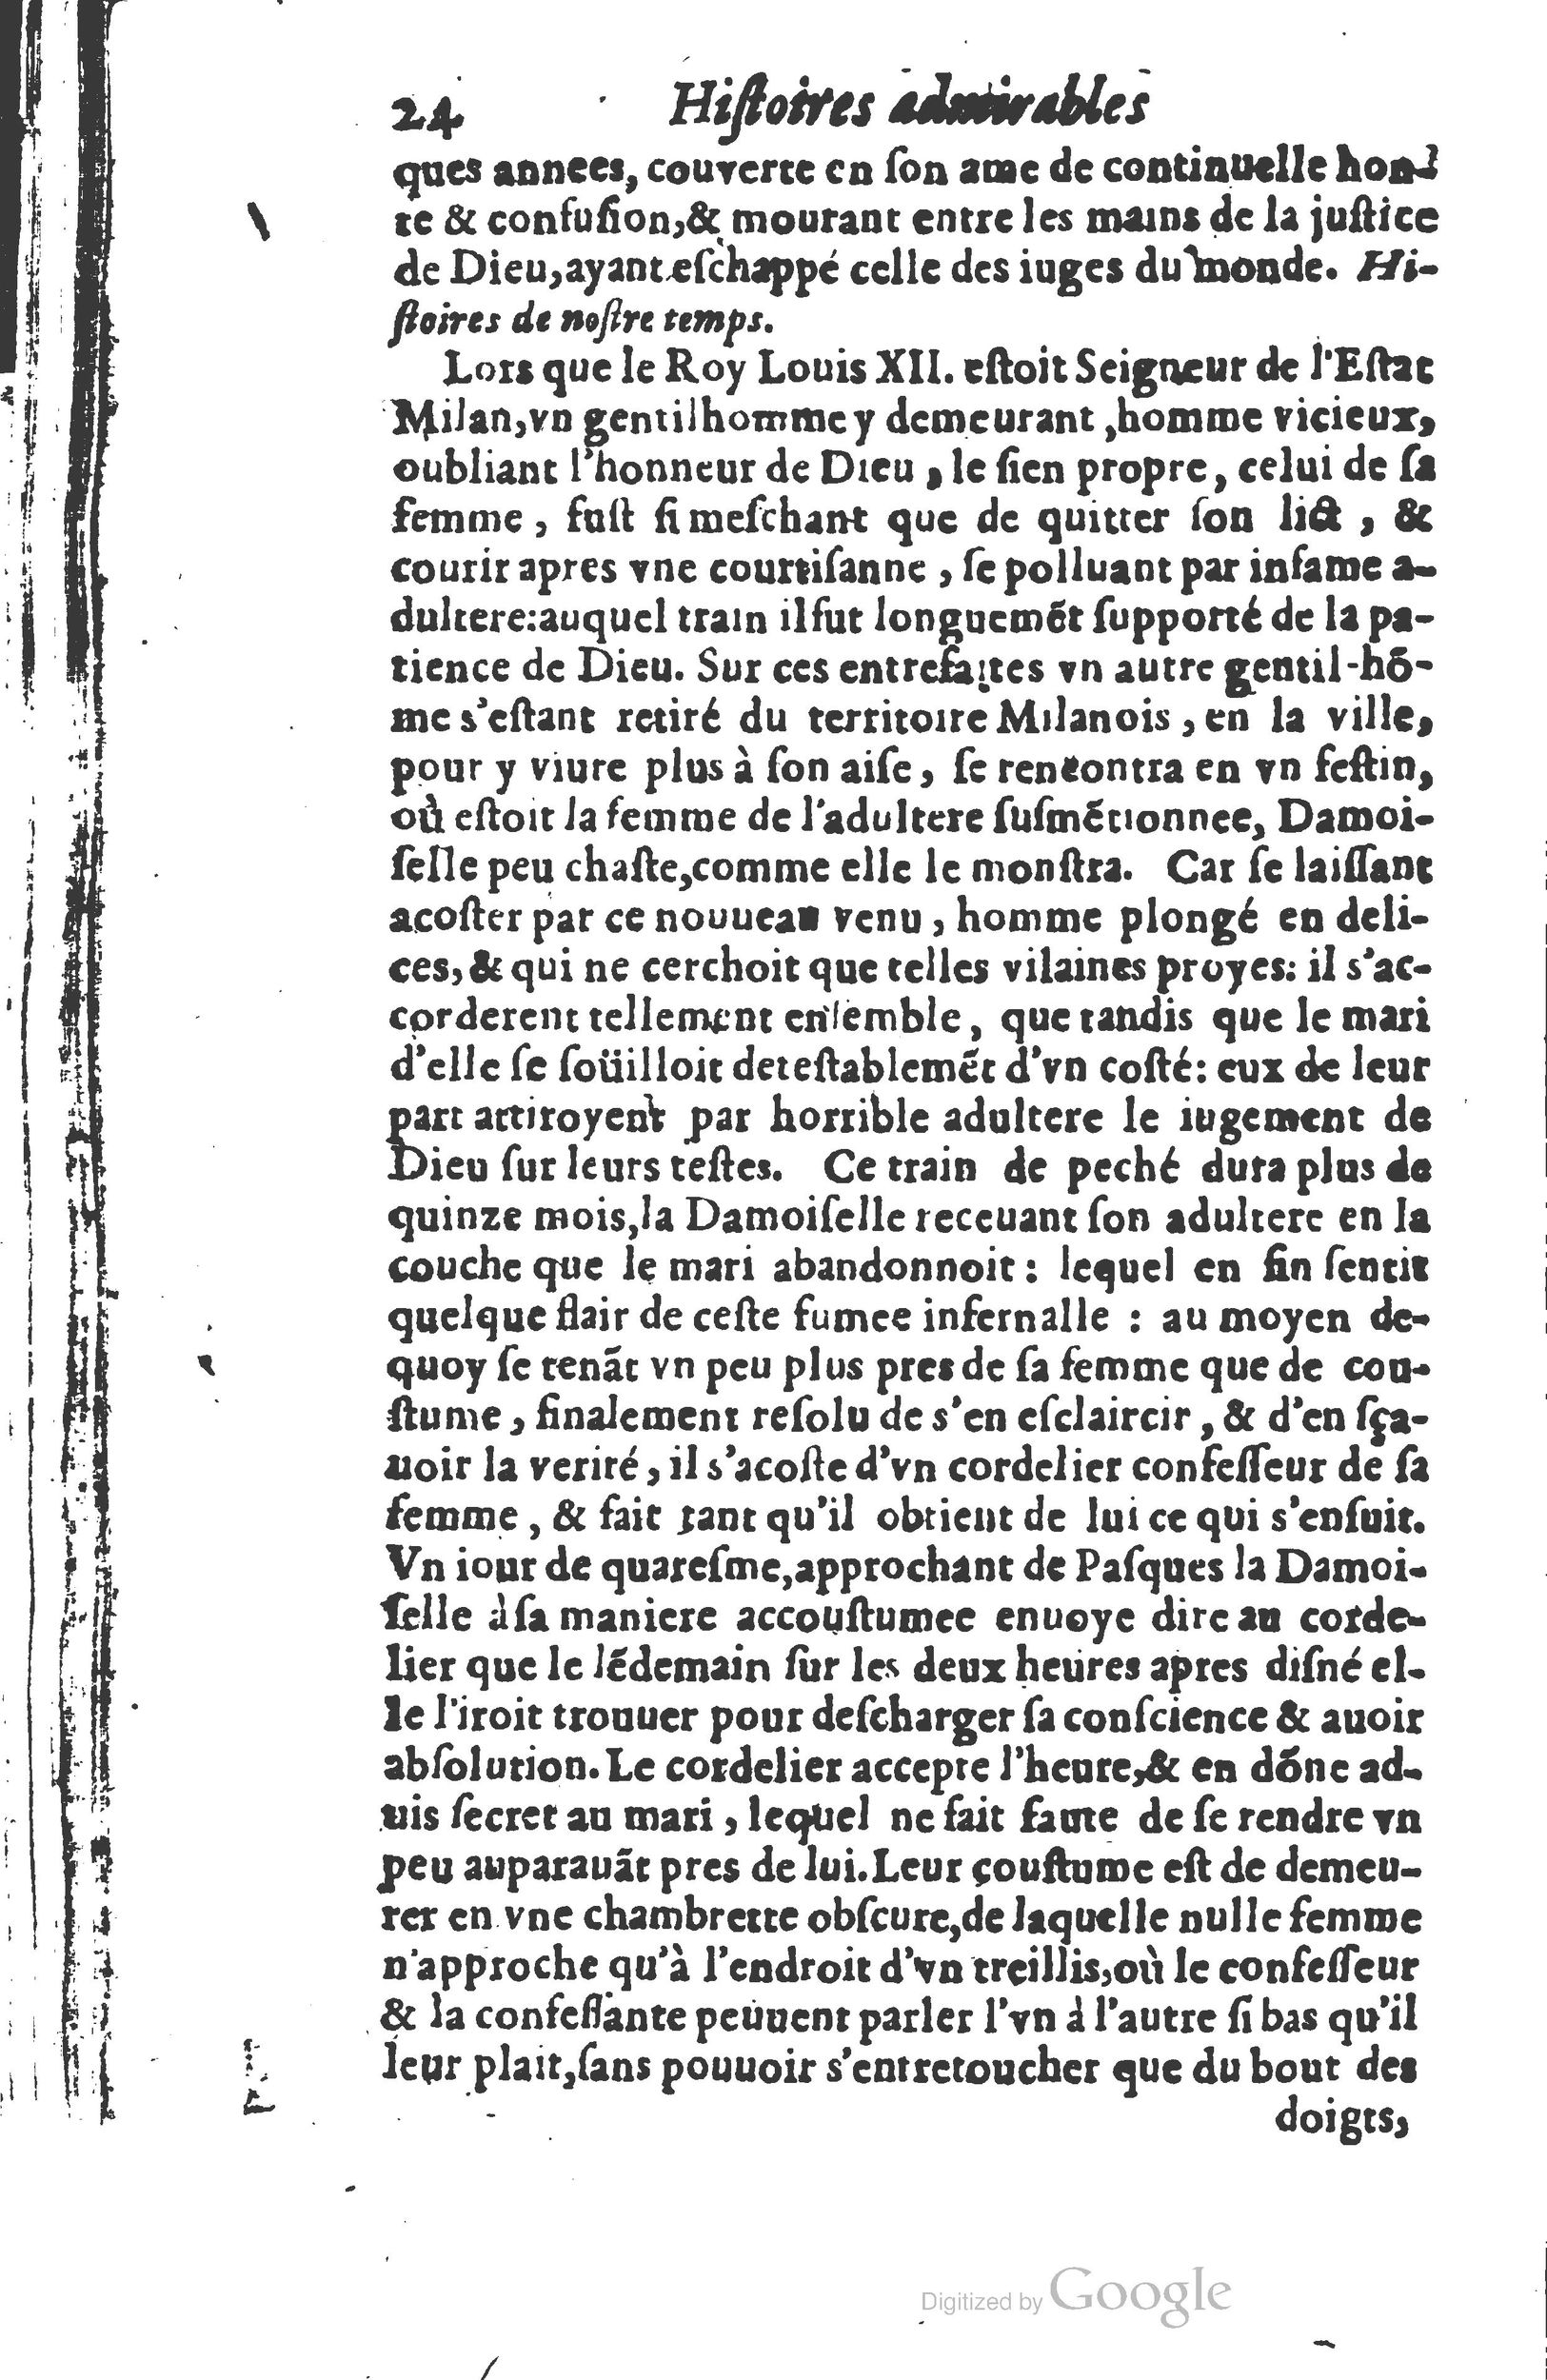 1610 Trésor d’histoires admirables et mémorables de nostre temps Marceau Princeton_Page_0045.jpg